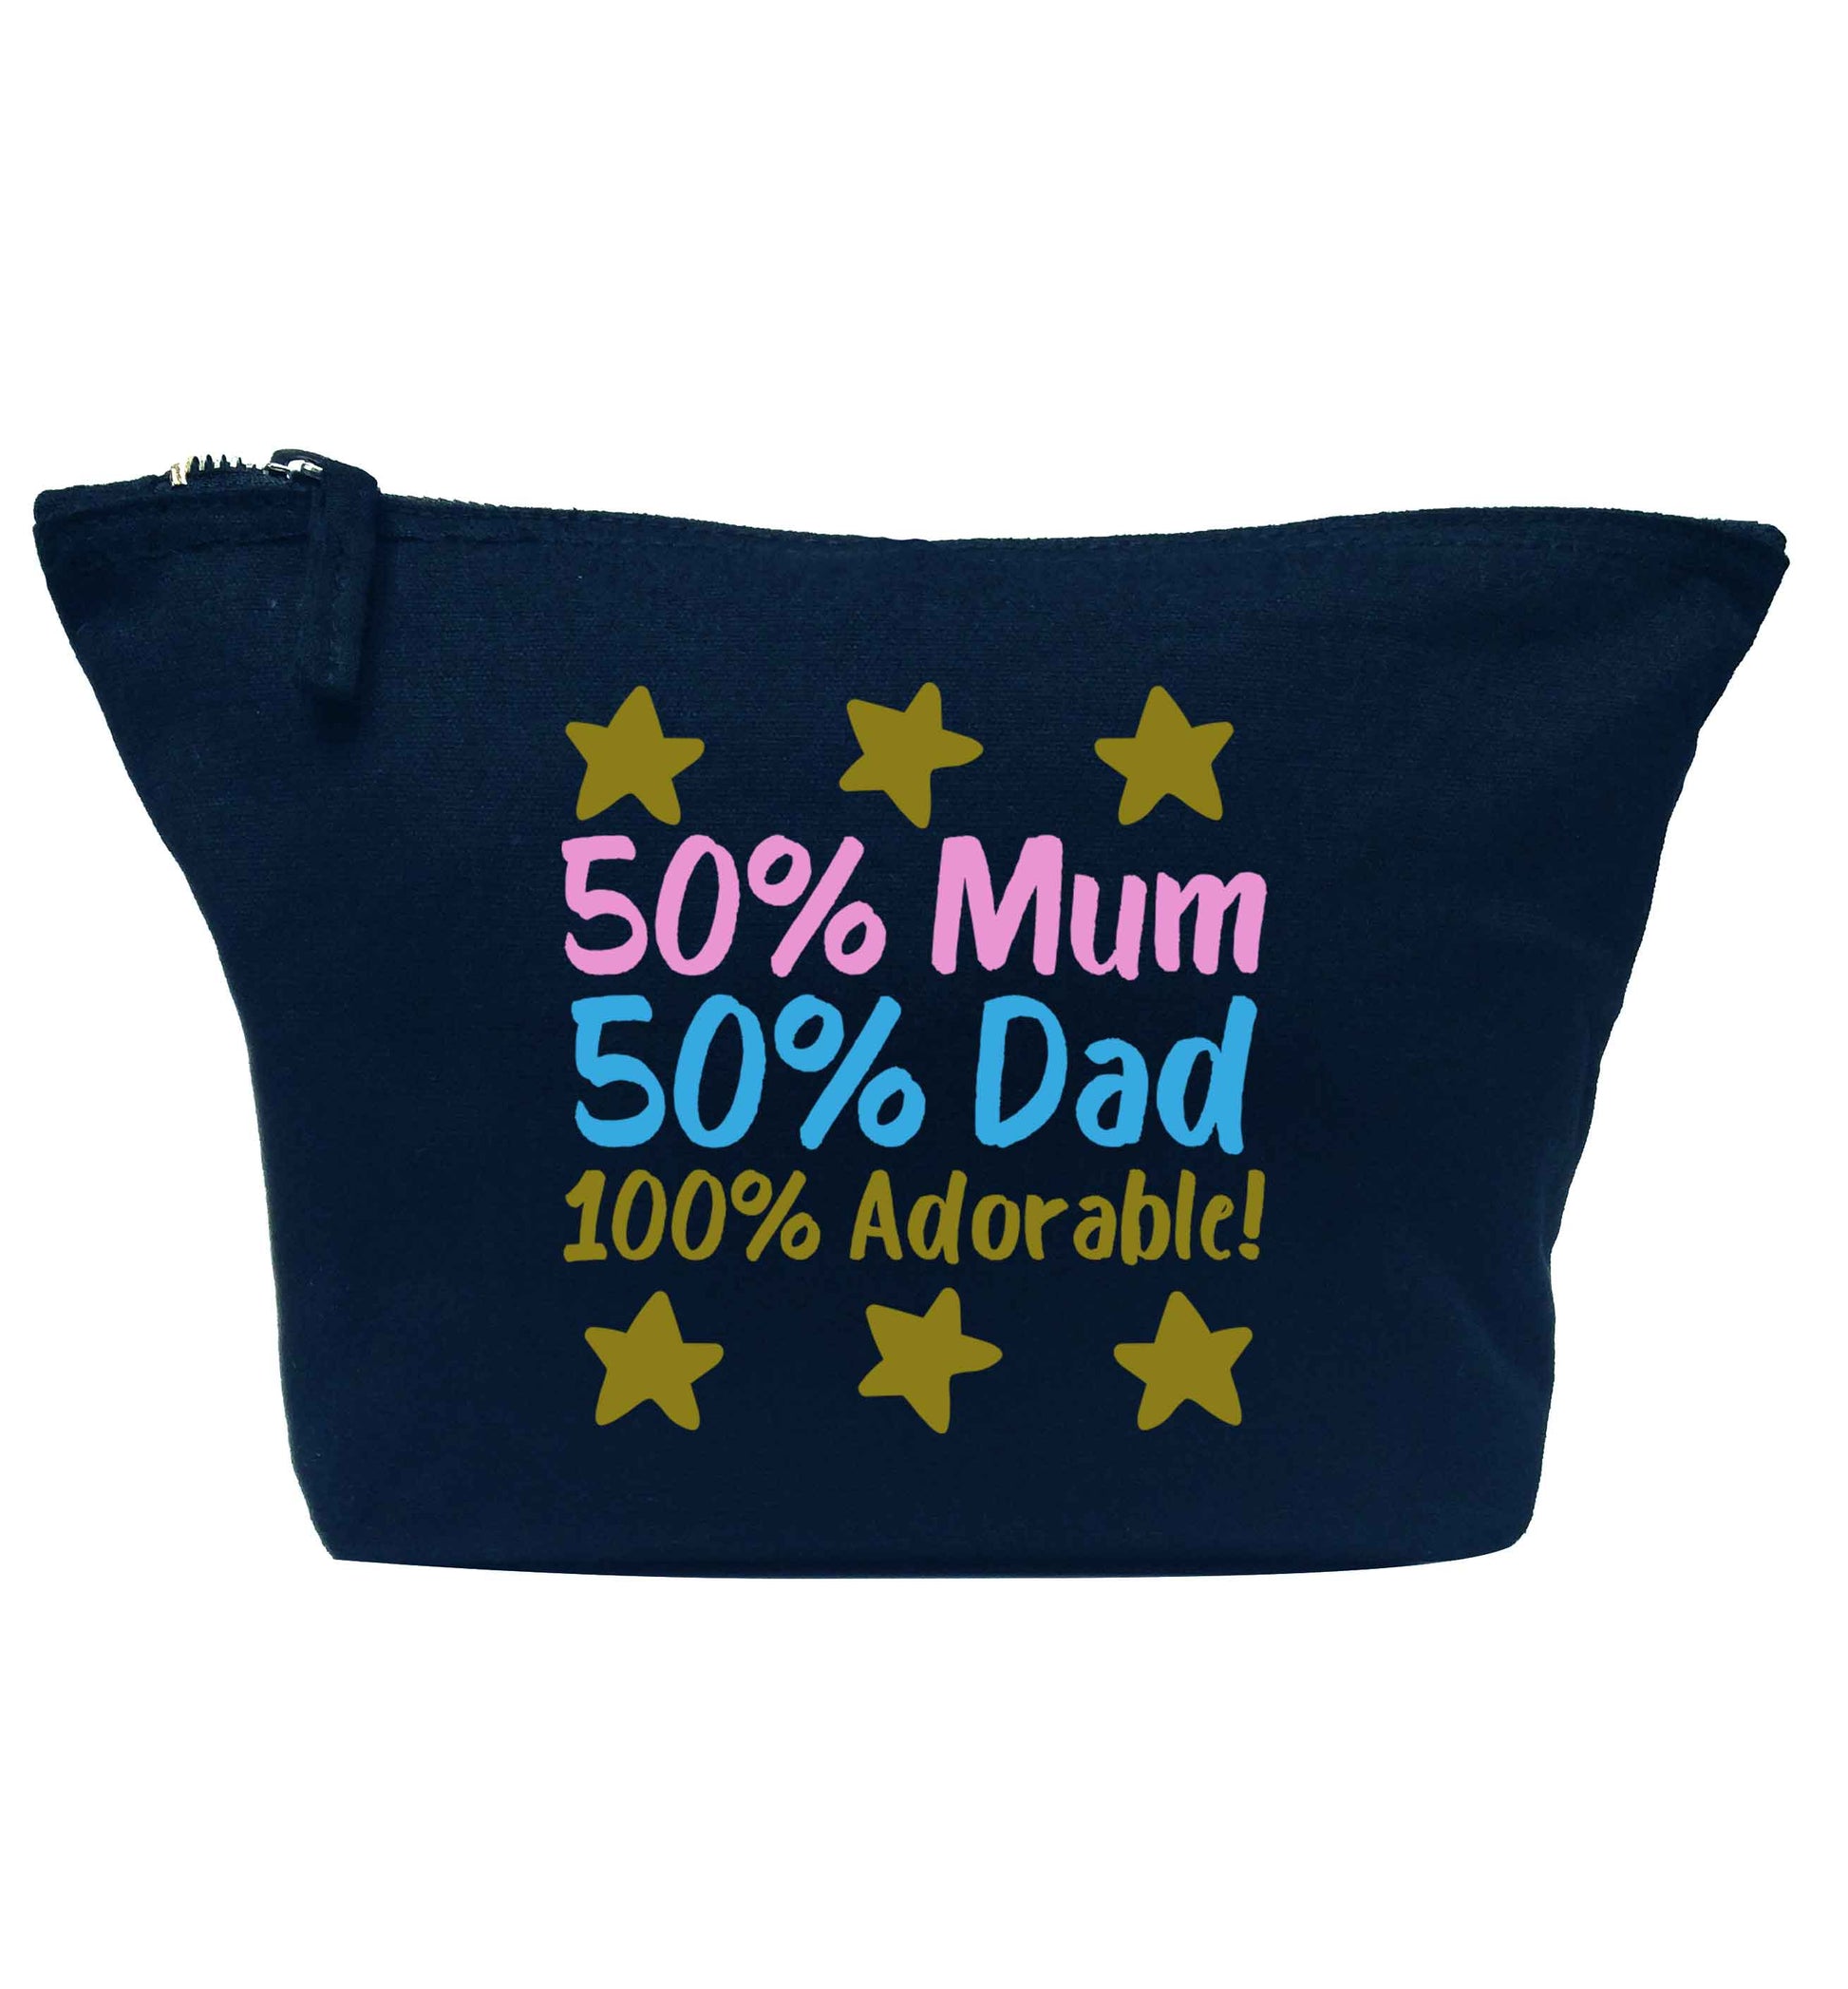 50% mum 50% dad 100% adorable navy makeup bag